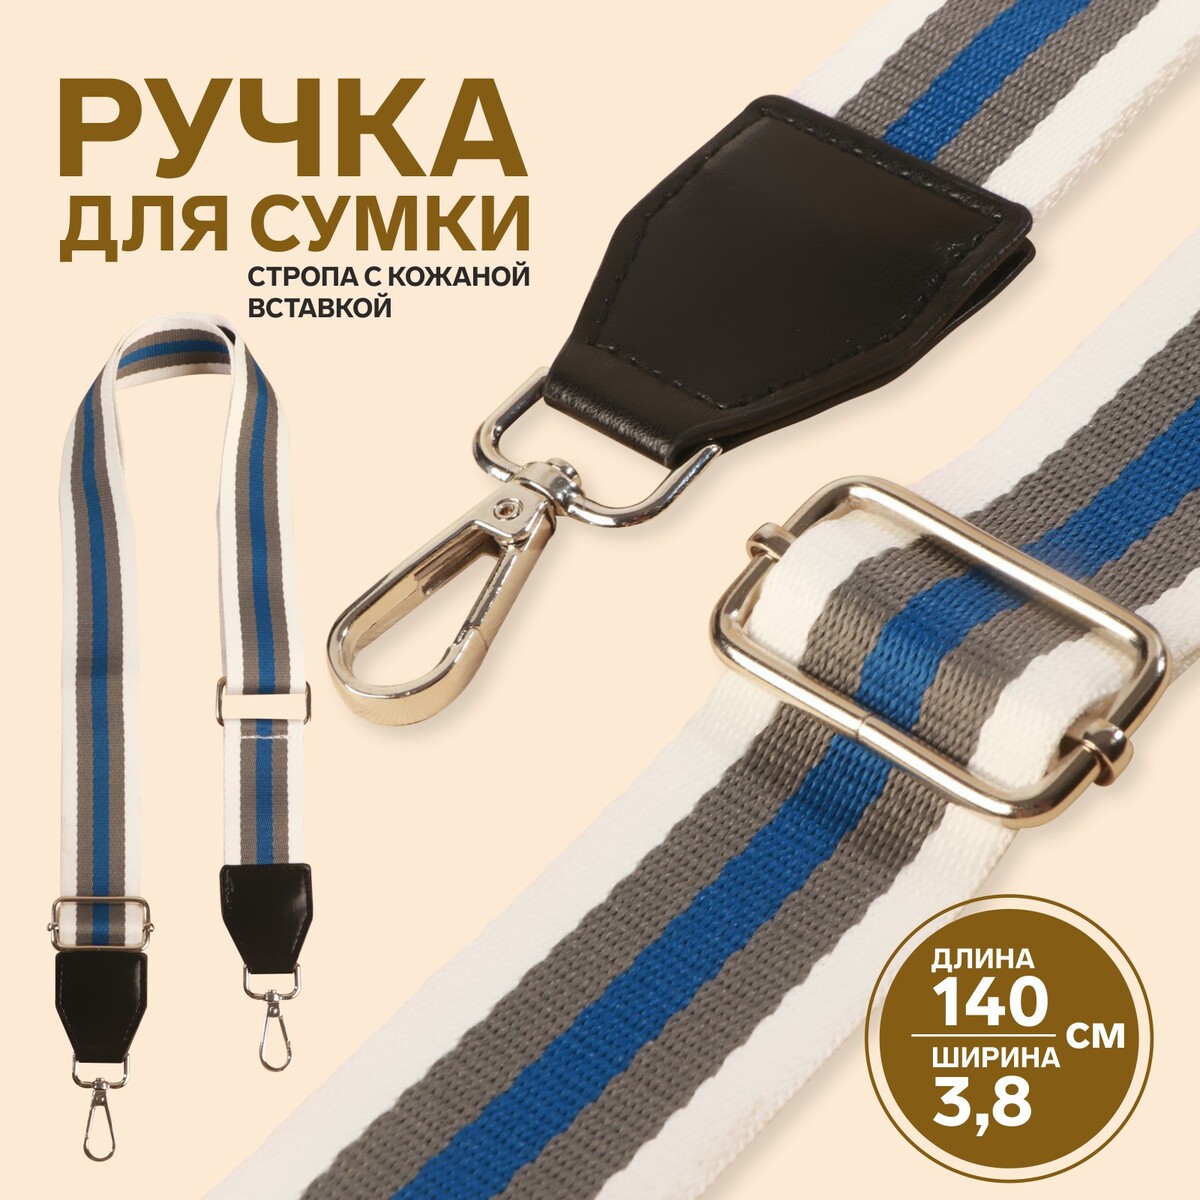 Ручка для сумки, стропа с кожаной вставкой, 140 × 3,8 см, цвет белый/серый/синий ручка для сумки 34 × 1 5 см серый